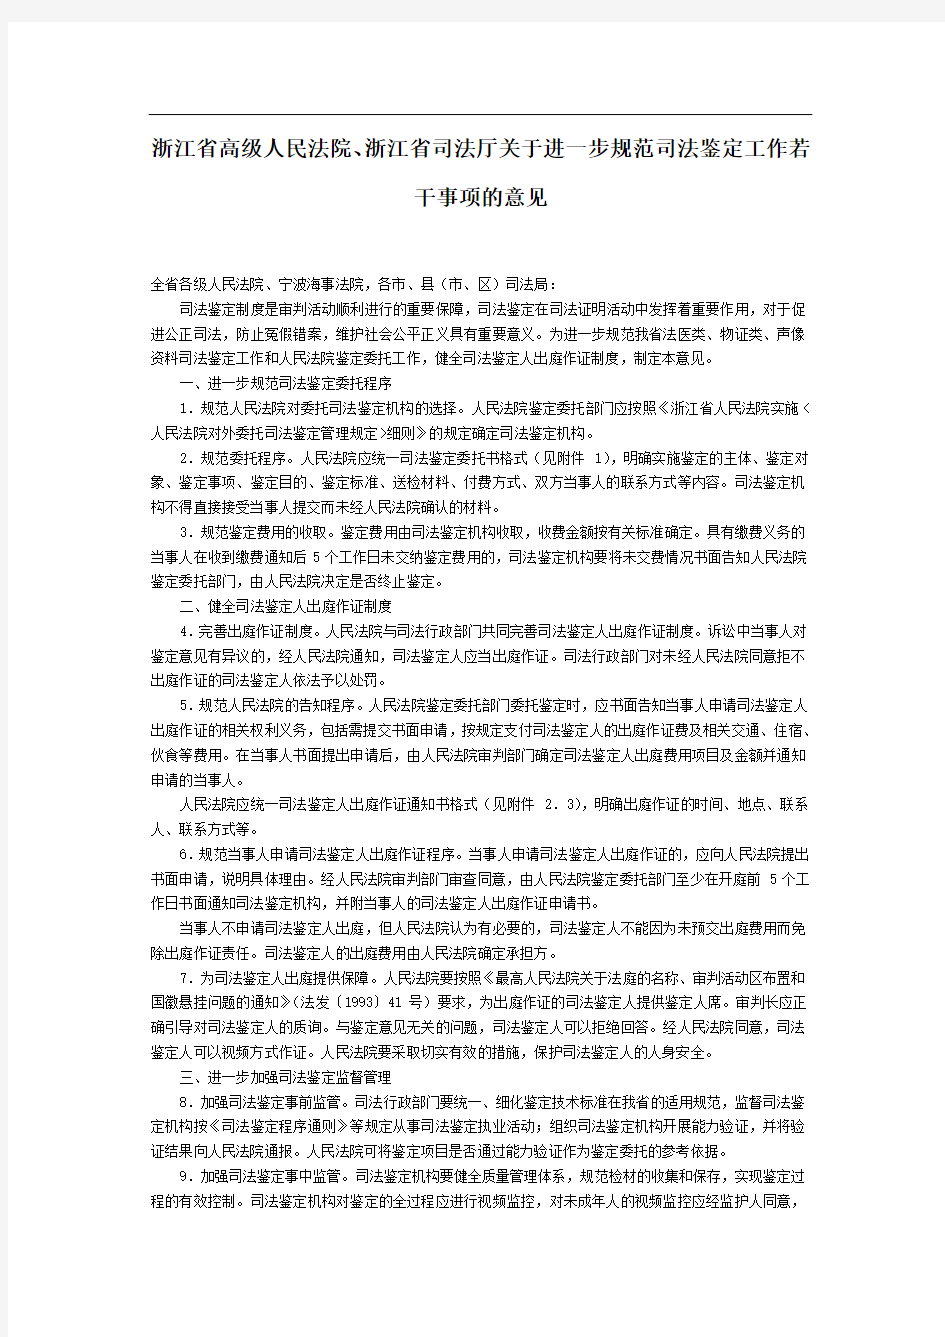 浙江省高级人民法院、浙江省司法厅关于进一步规范司法鉴定工作若干事项的意见-地方司法规范